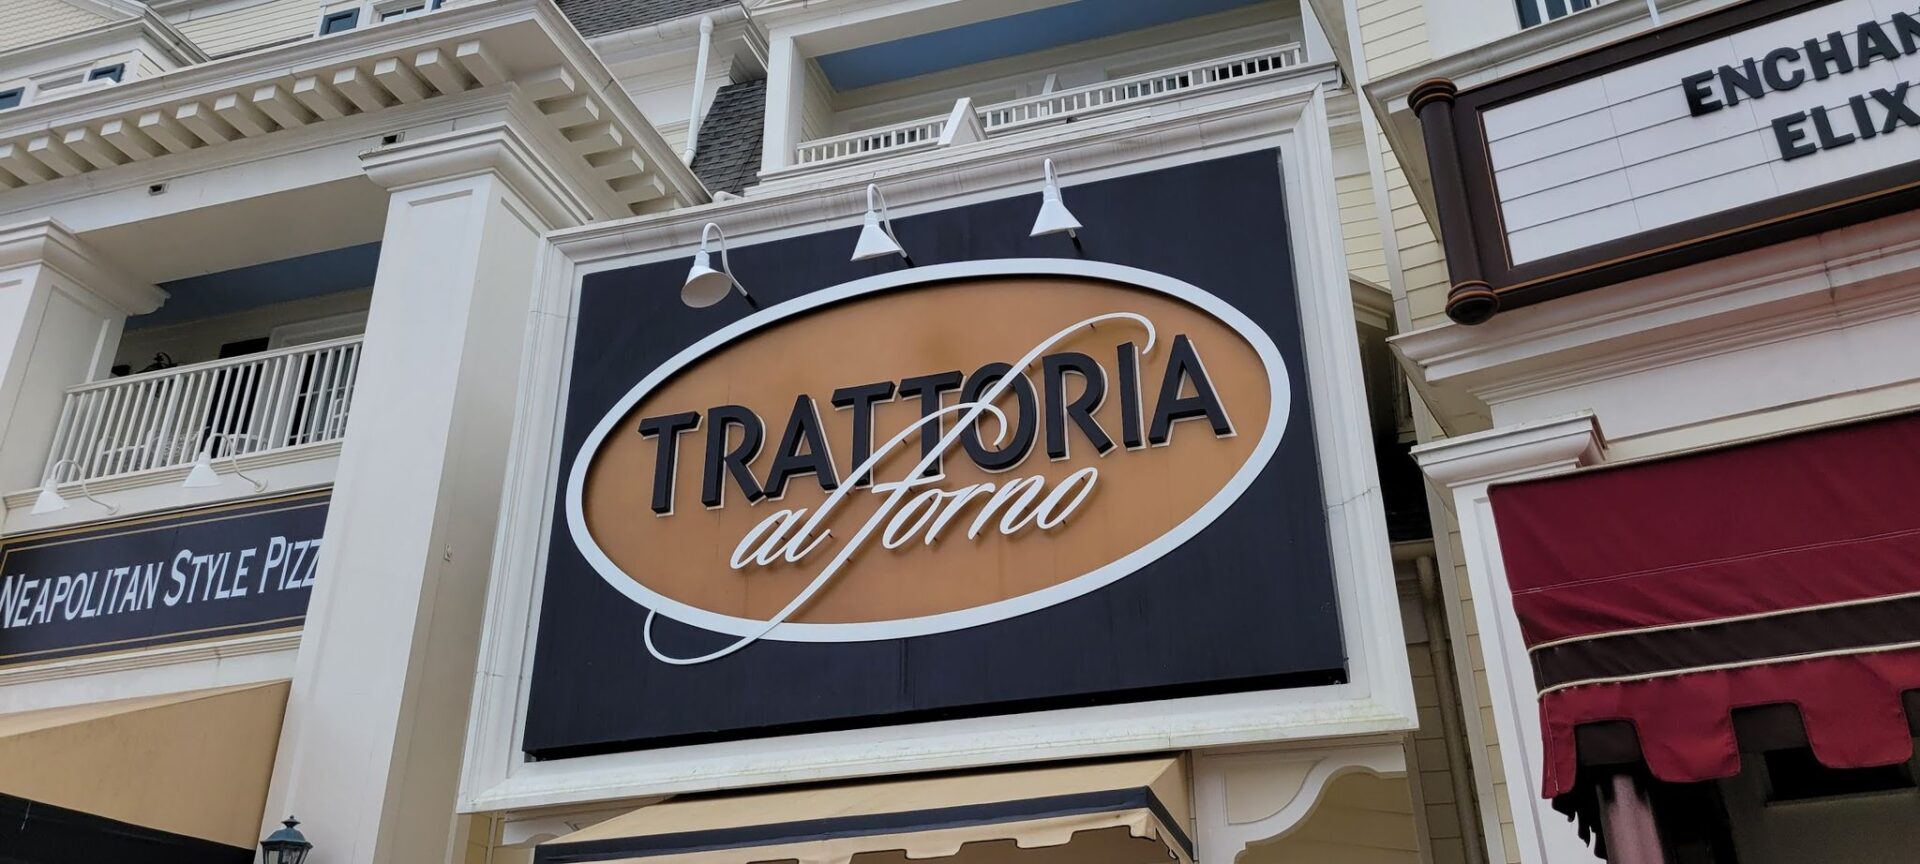 Trattoria al Forno Closing for Refurbishment in June